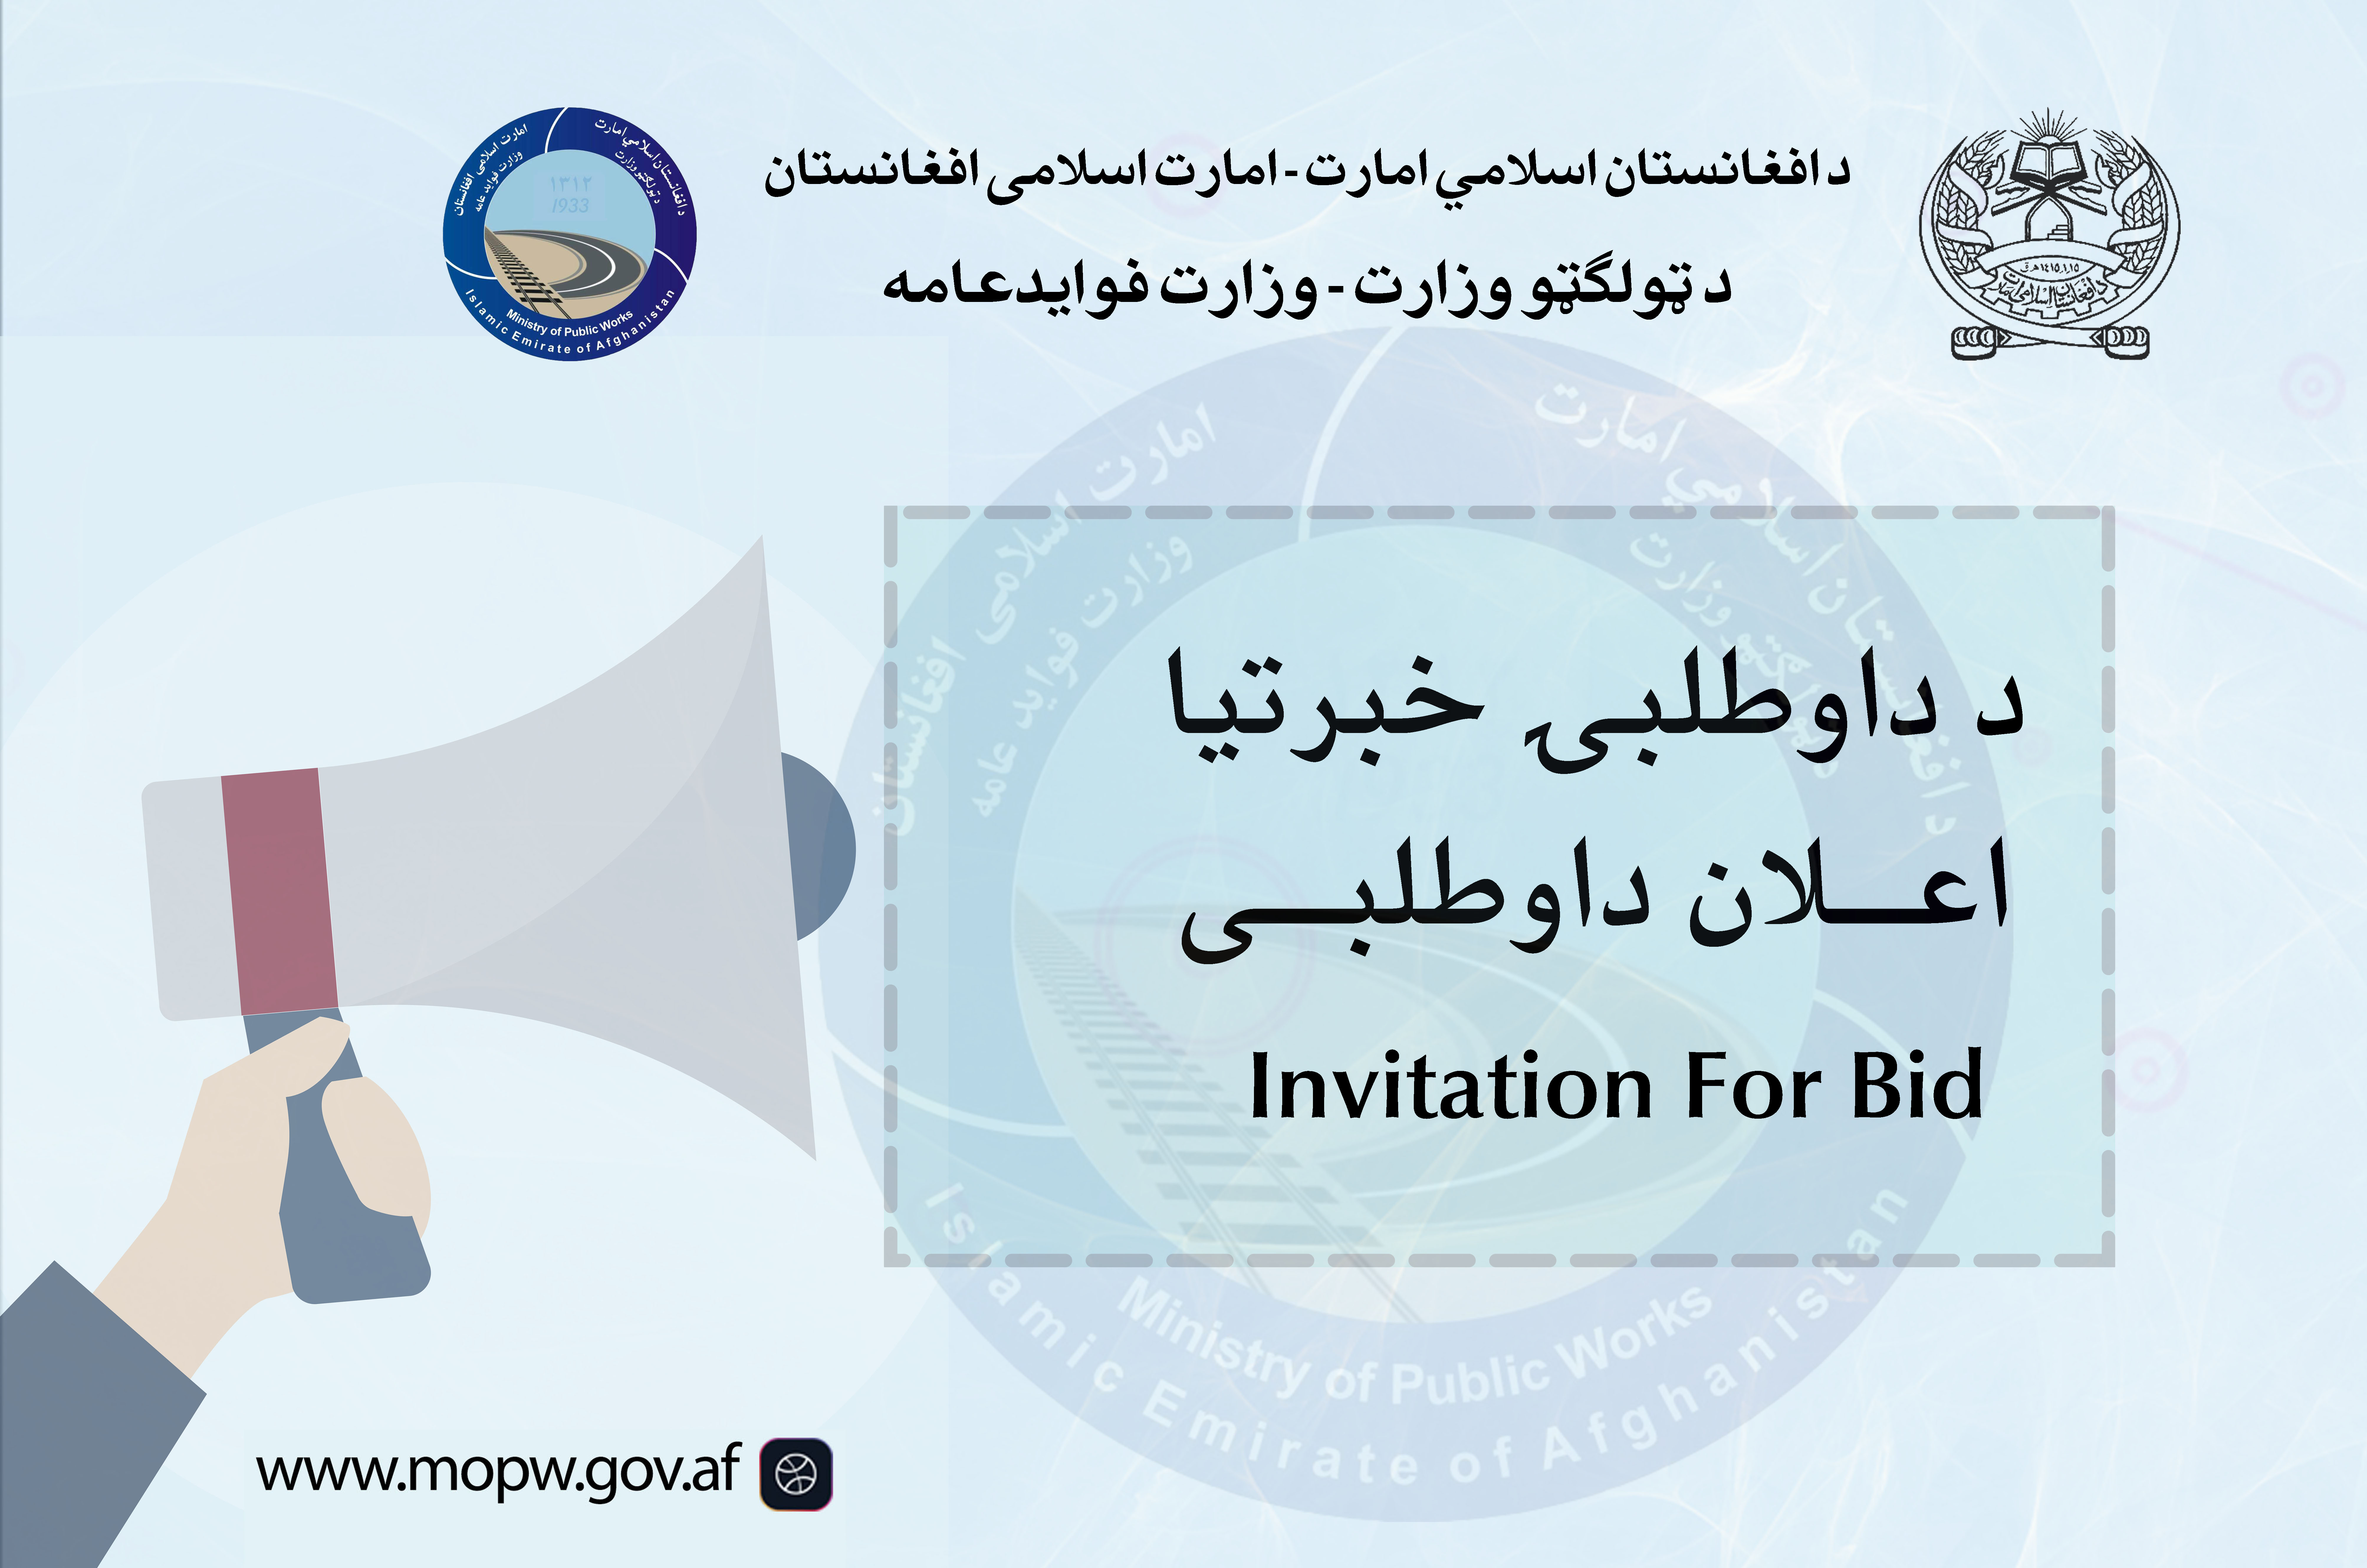  اعلان دعوت به داوطلبیپروژه ساختمان مجدد پل زاره نورک واقع مسیر شاهراه عمومی کابل-کندهار